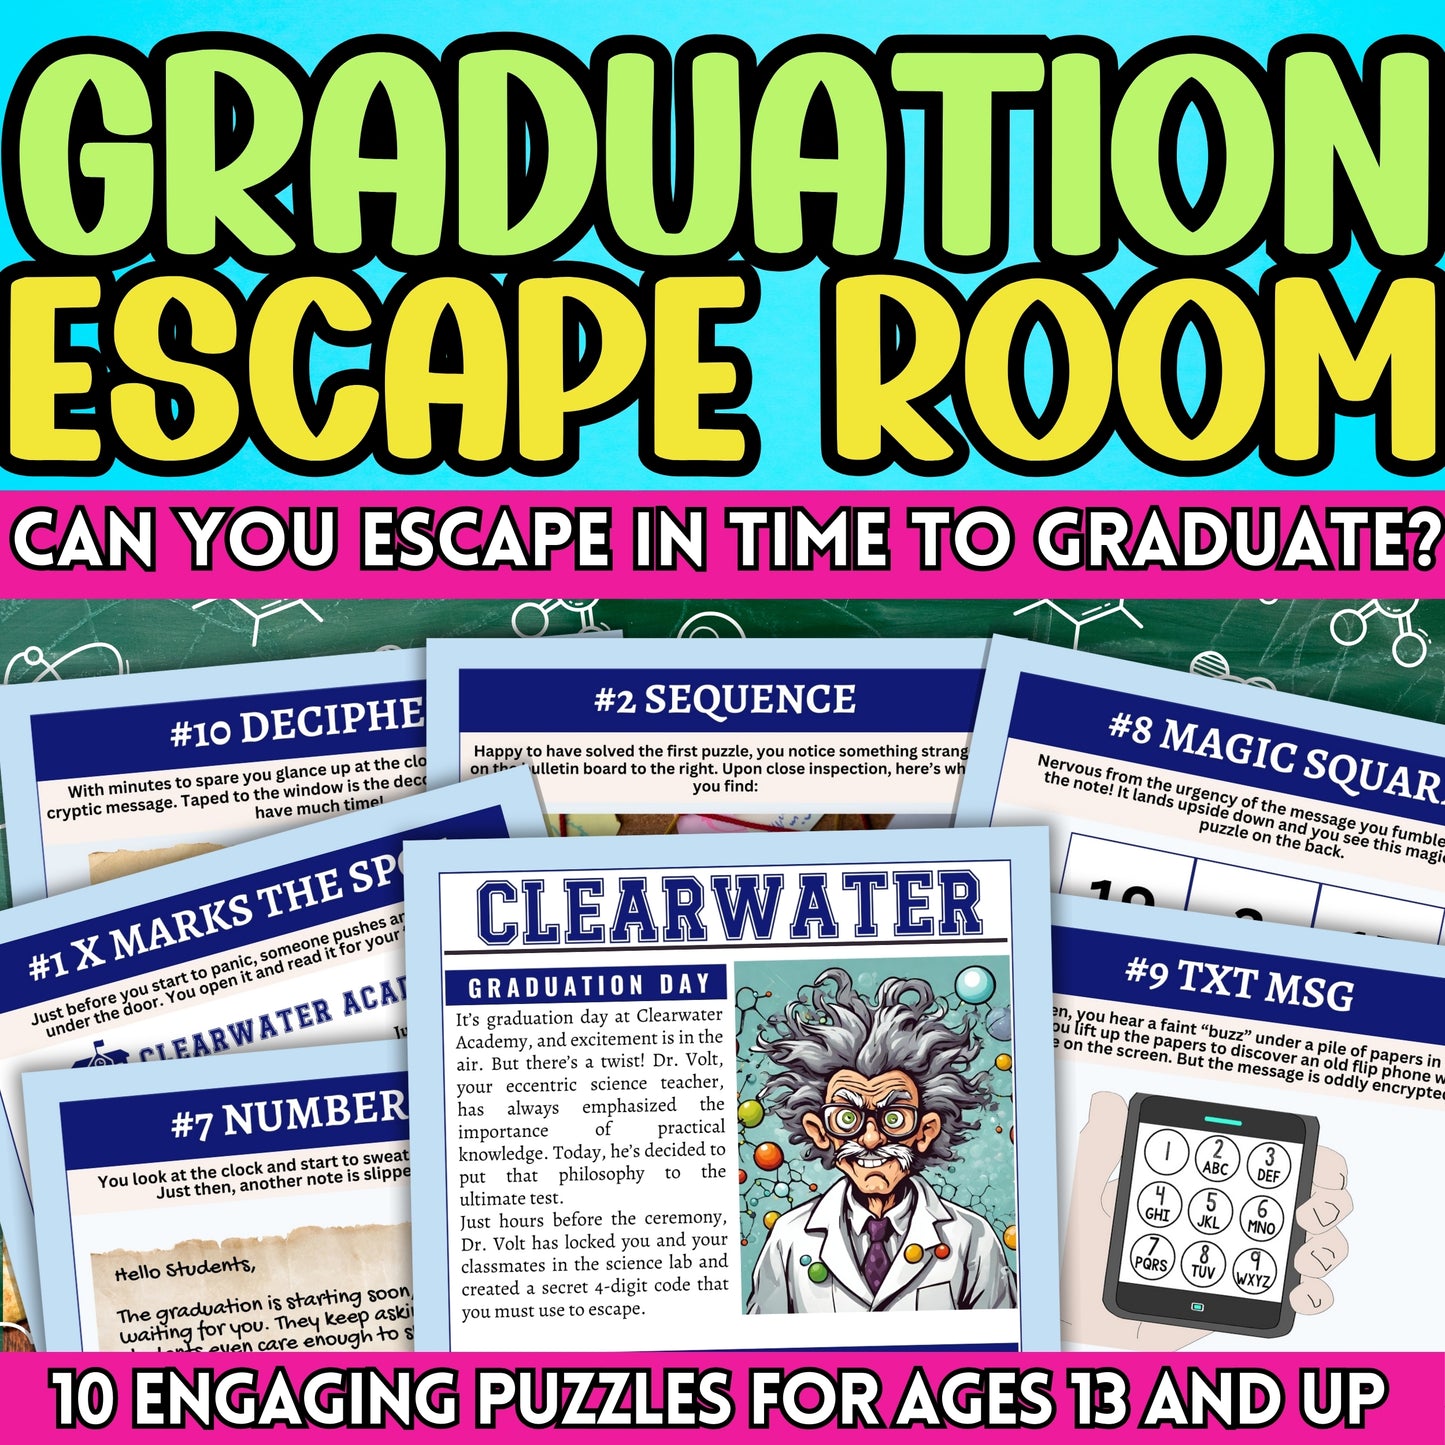 Graduation Escape Room